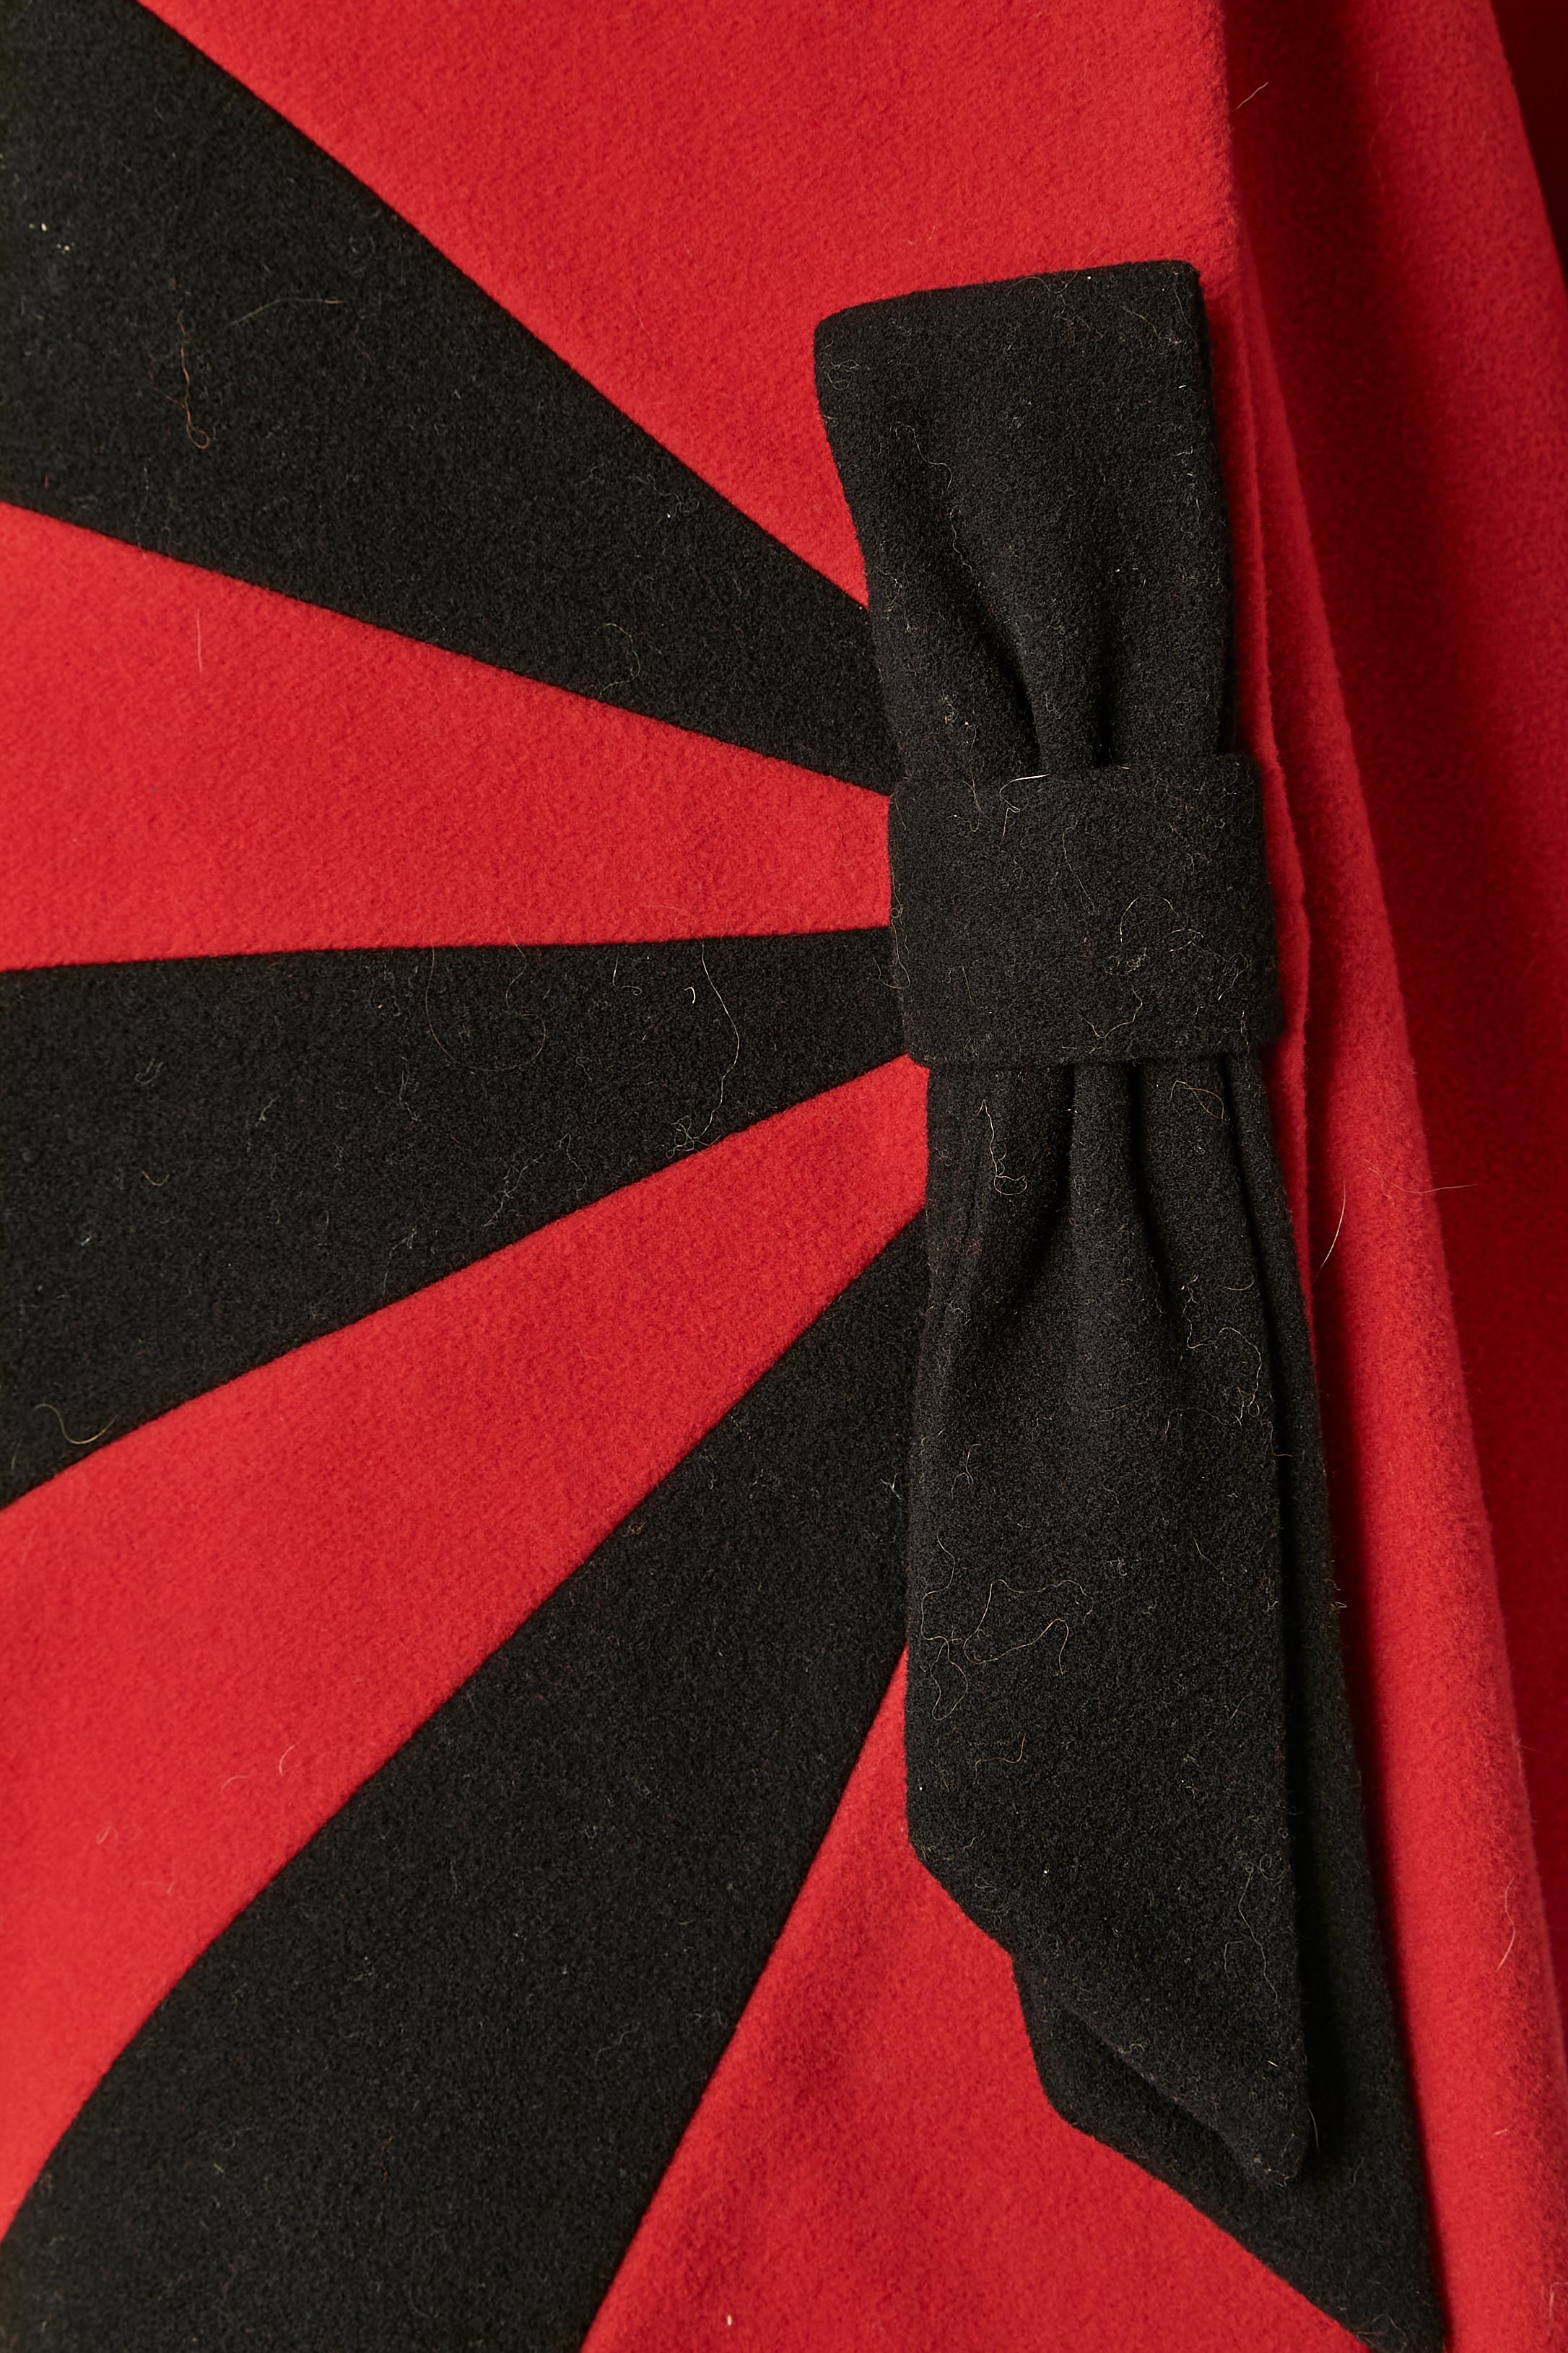 Zweireihiger Mantel aus roter und schwarzer Wolle und Kaschmir.Zweireihiger Mantel aus roter und schwarzer Wolle und Kaschmir. Dekorative Schleife in der vorderen Mitte
GRÖSSE 46 (It) 42 (Fr) L 